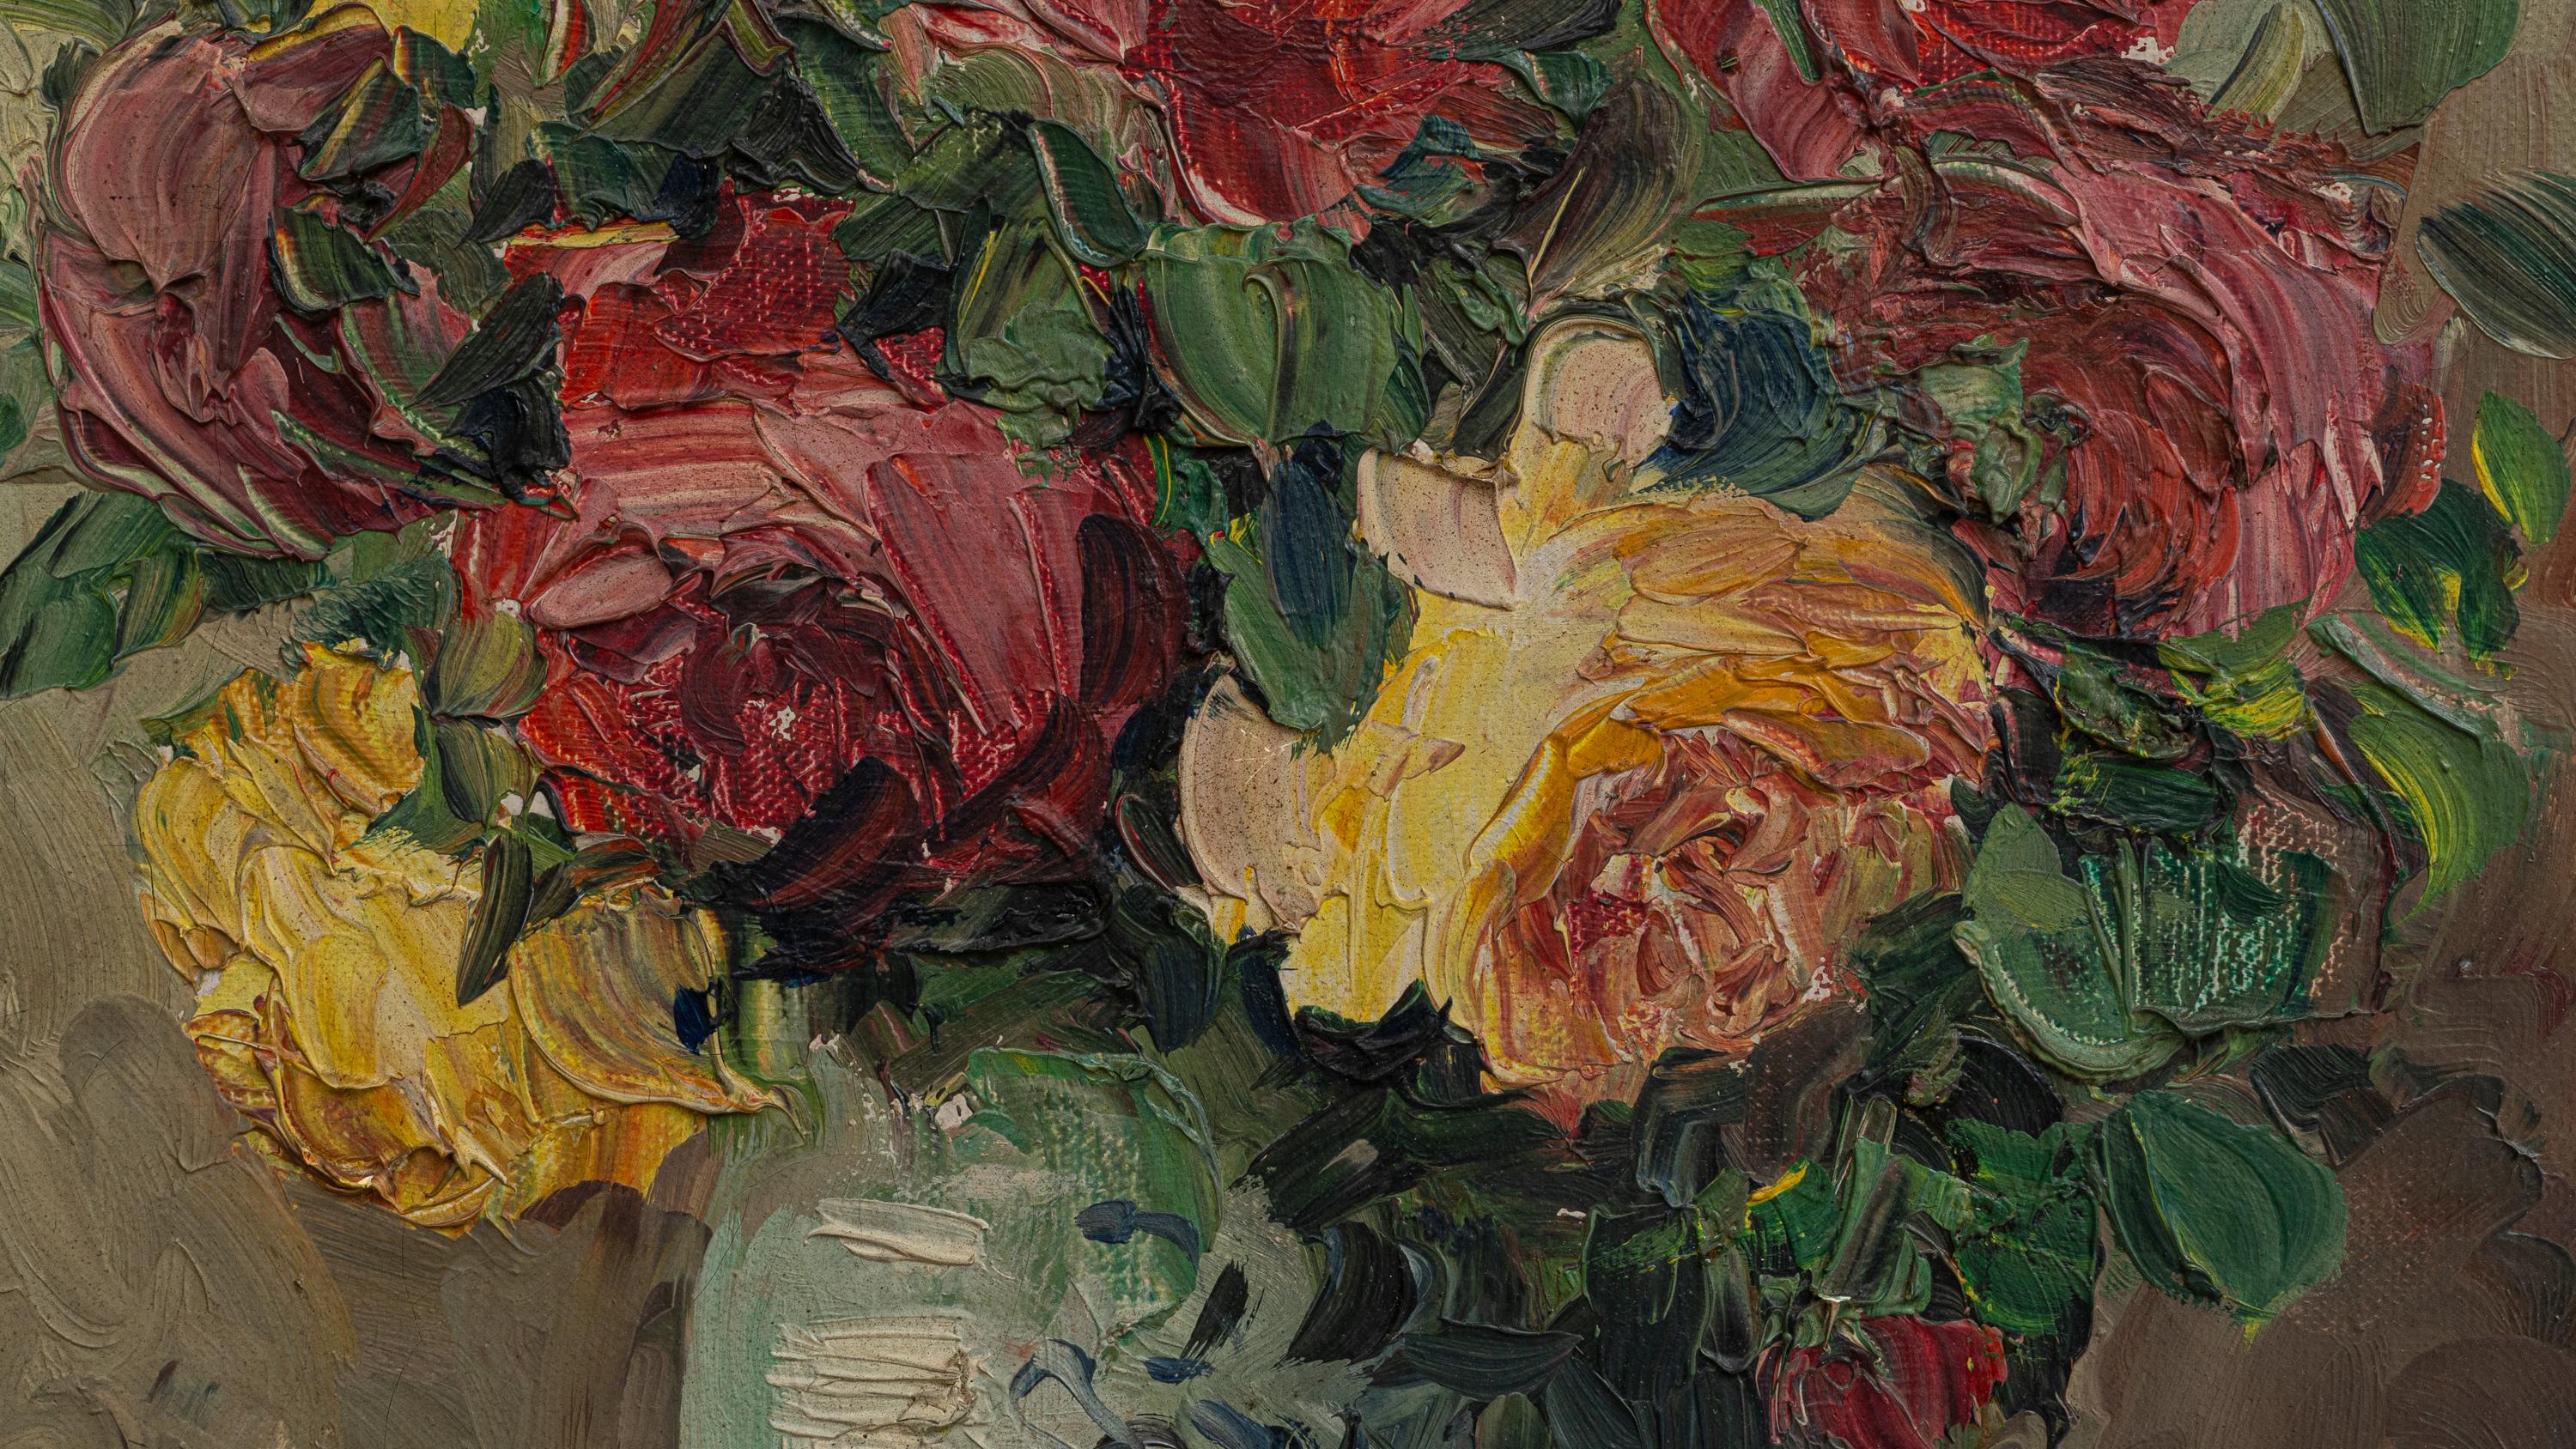 Cette étonnante peinture belge du XXe siècle respire l'éclat et la passion grâce à sa représentation luxuriante d'un bouquet de roses en pleine floraison. L'artiste utilise des coups de pinceau épais et expressifs ainsi que des couleurs riches et